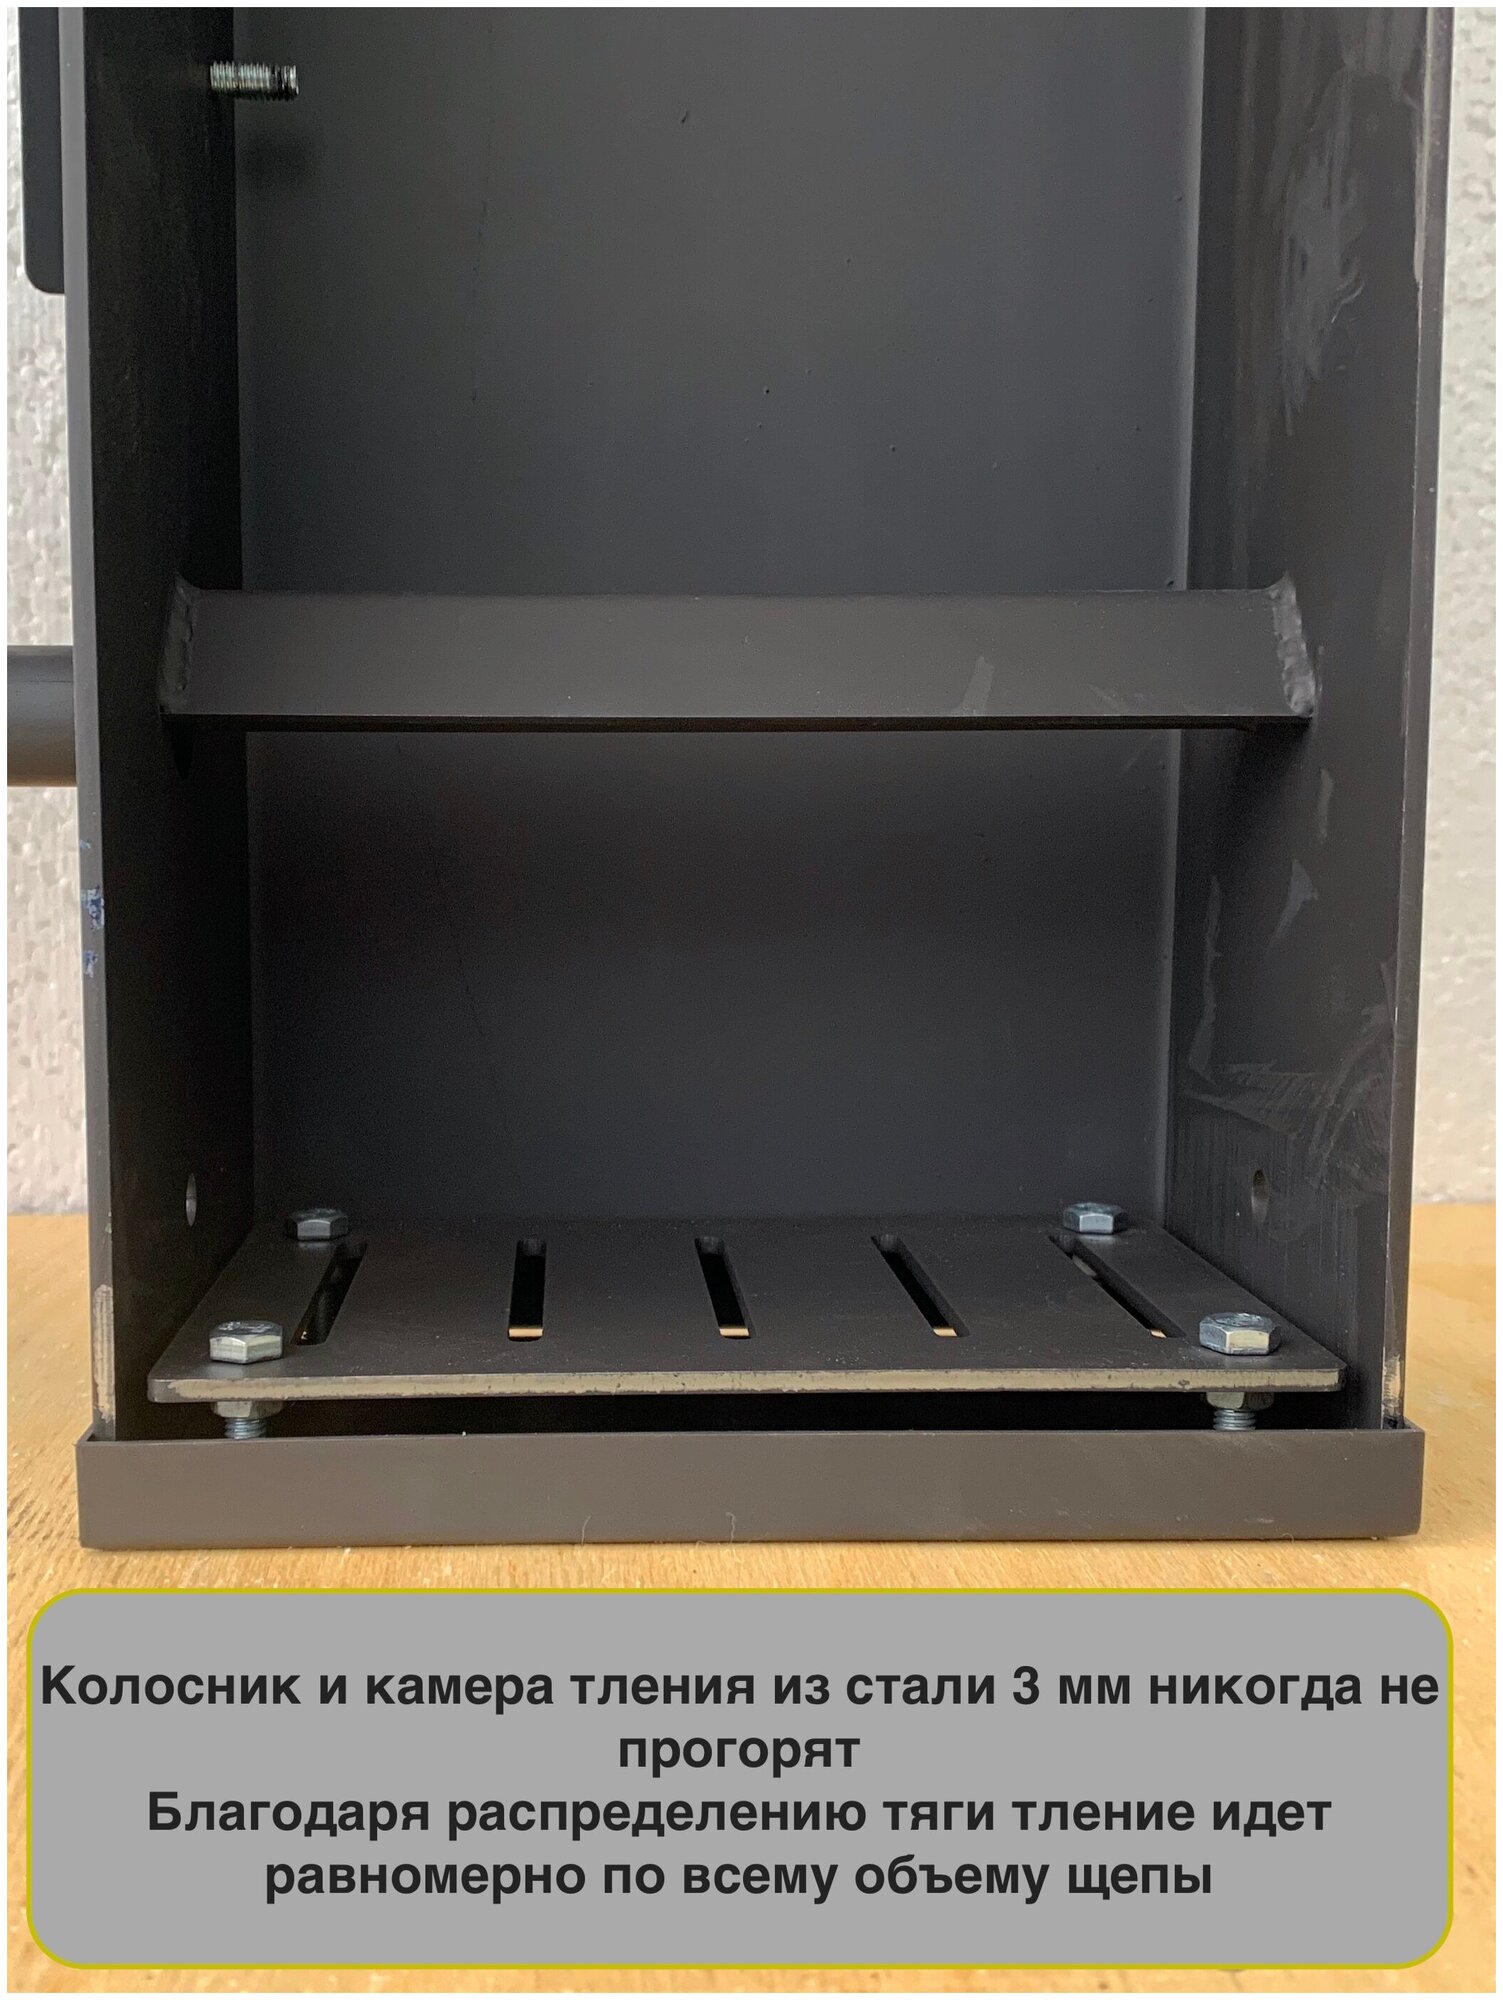 Дымогенератор холодного копчения "Смокфуд" с вентиляторным блоком - фотография № 7